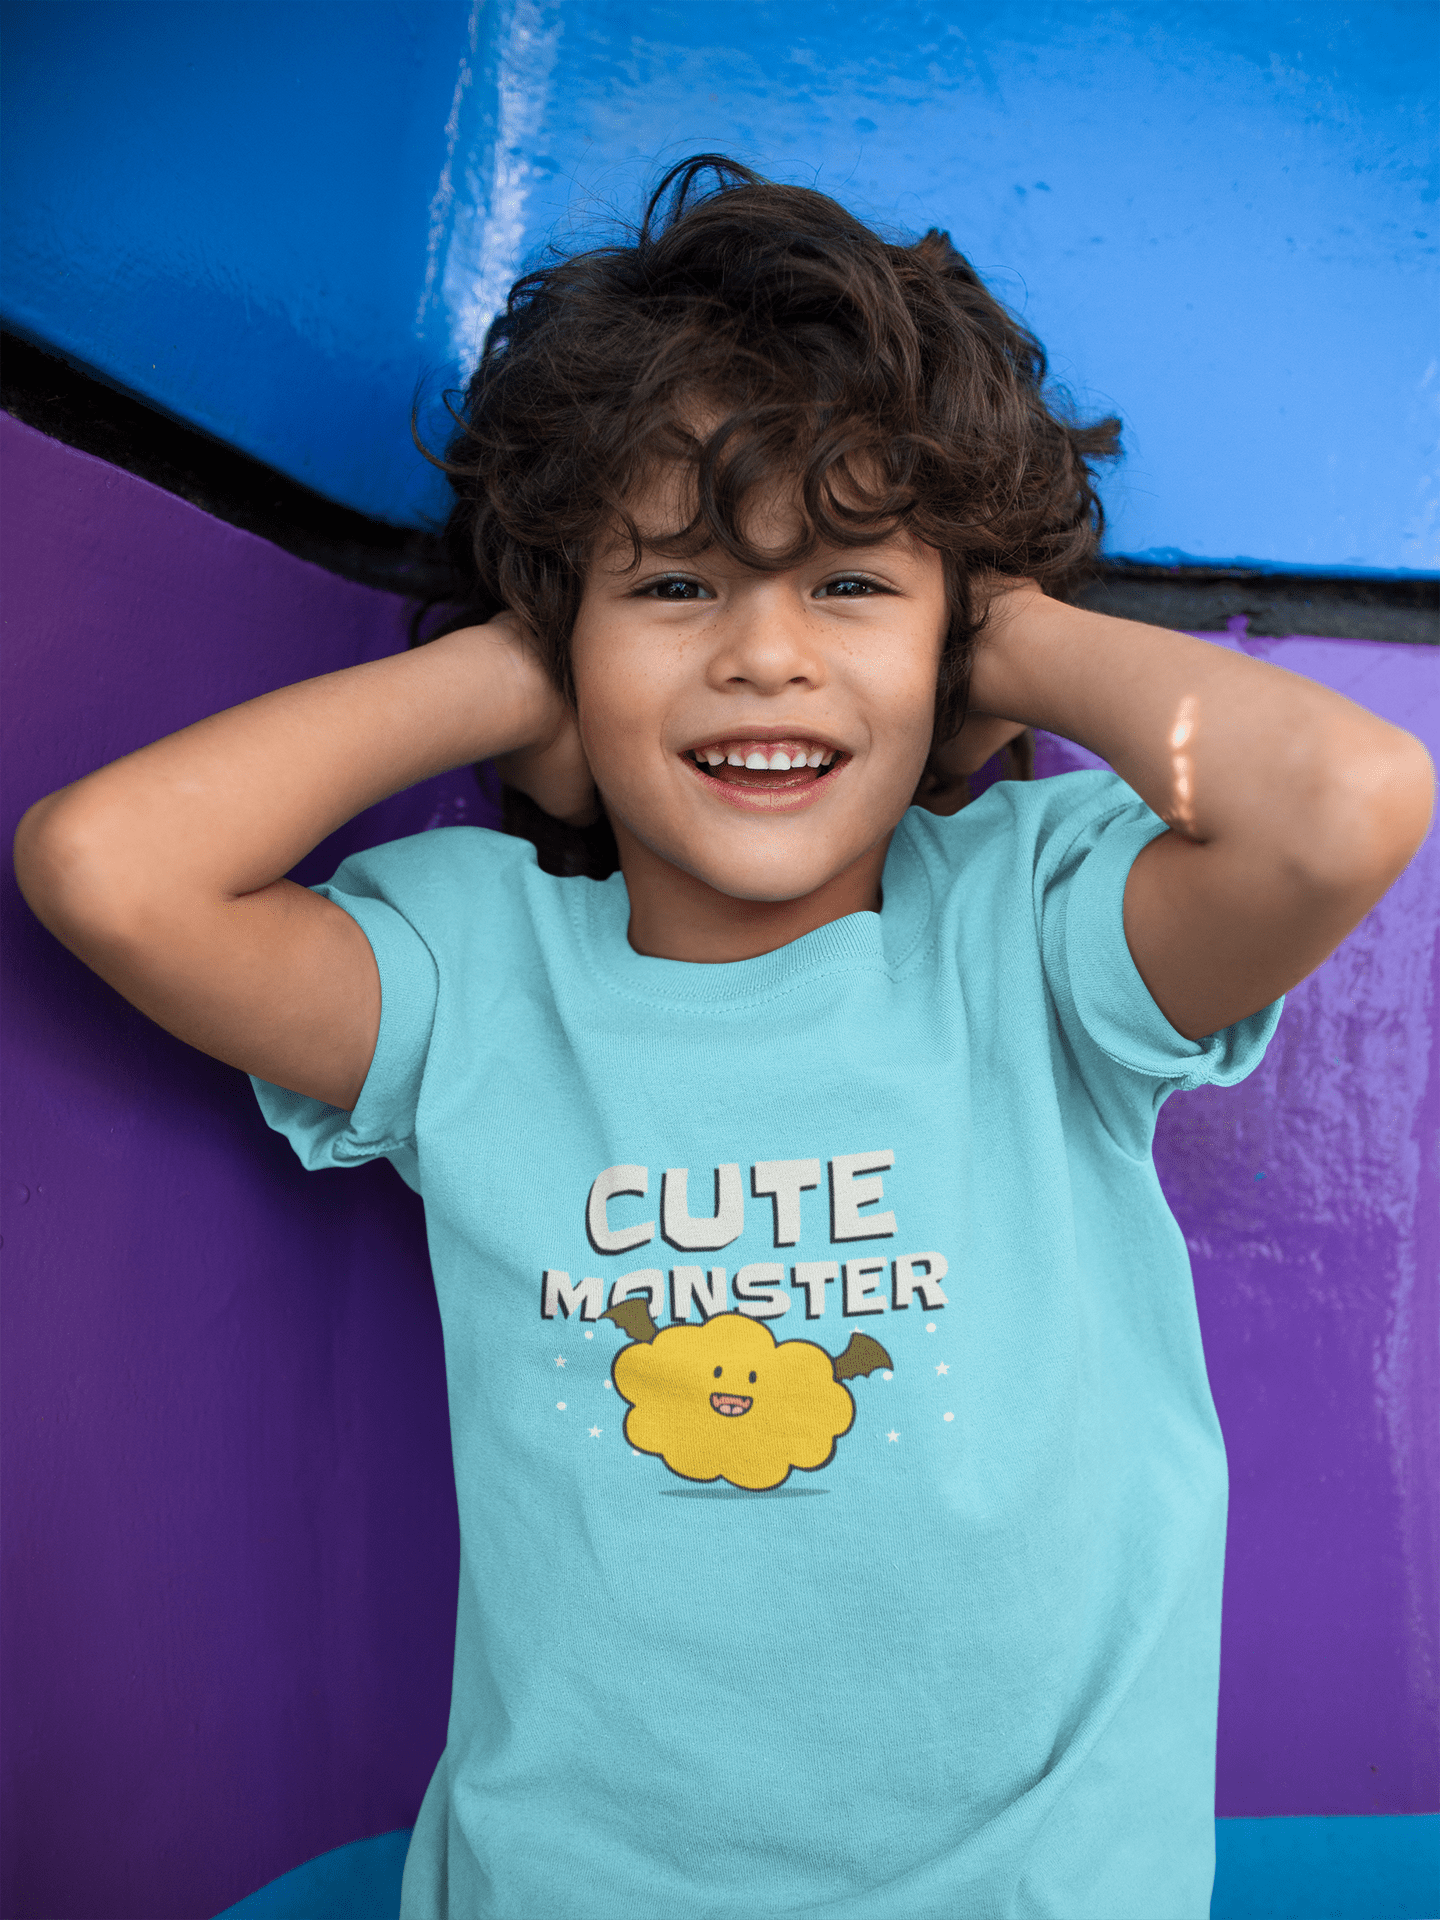 "CUTE MONSTER" KIDS HALF-SLEEVE T-SHIRT SKY BLUE